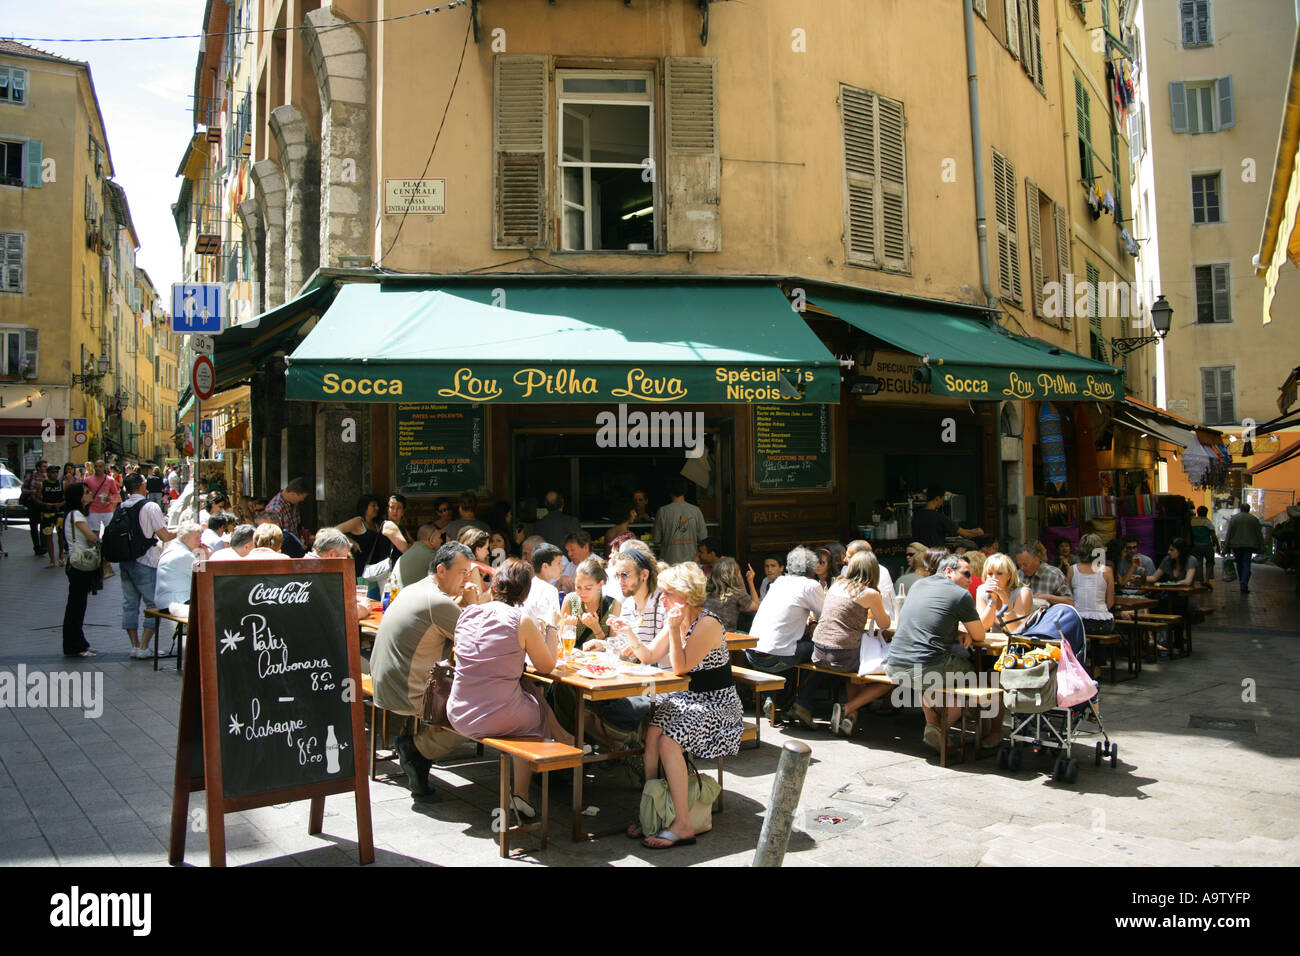 Terrasse de restaurant dans le quartier de la vieille ville de Nice, France. Utilisez UNIQUEMENT ÉDITORIALE Banque D'Images